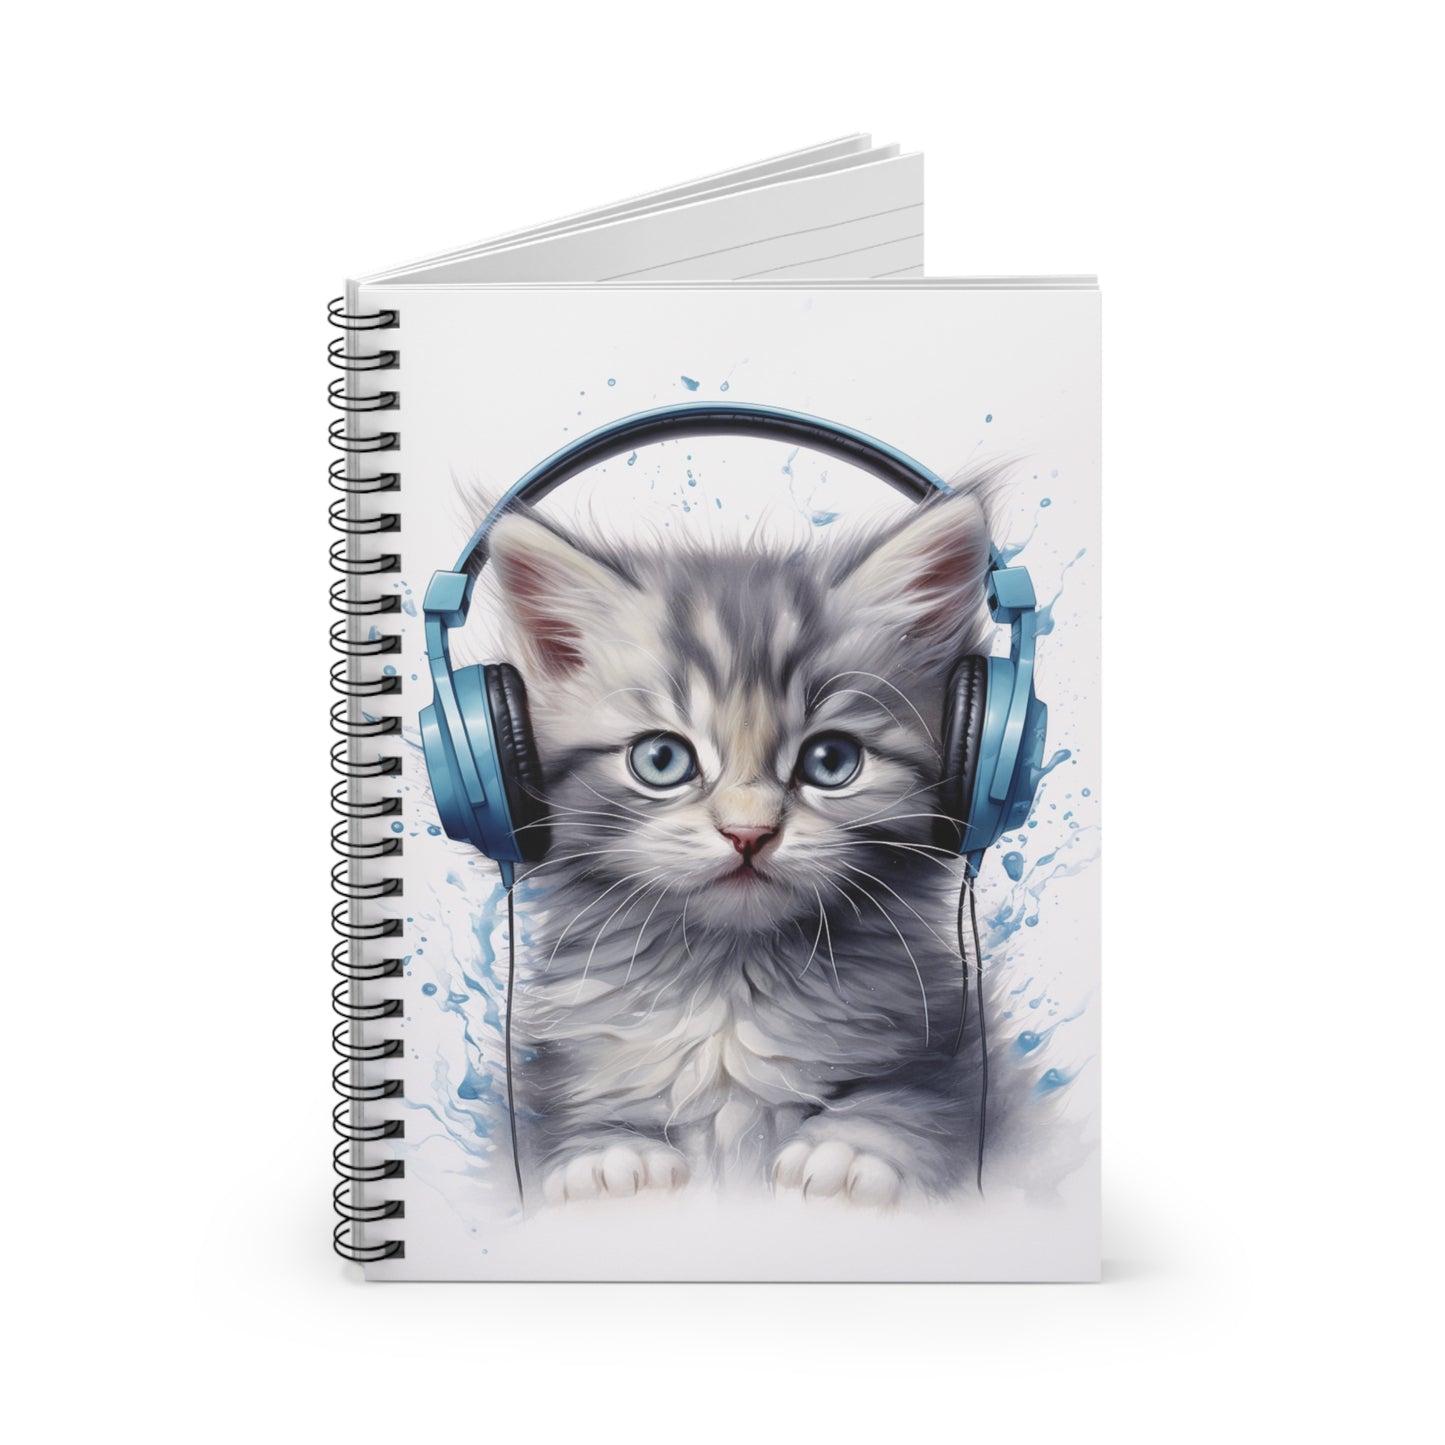 Blue Kitten Headphones | Spiral Notebook - Ruled Line